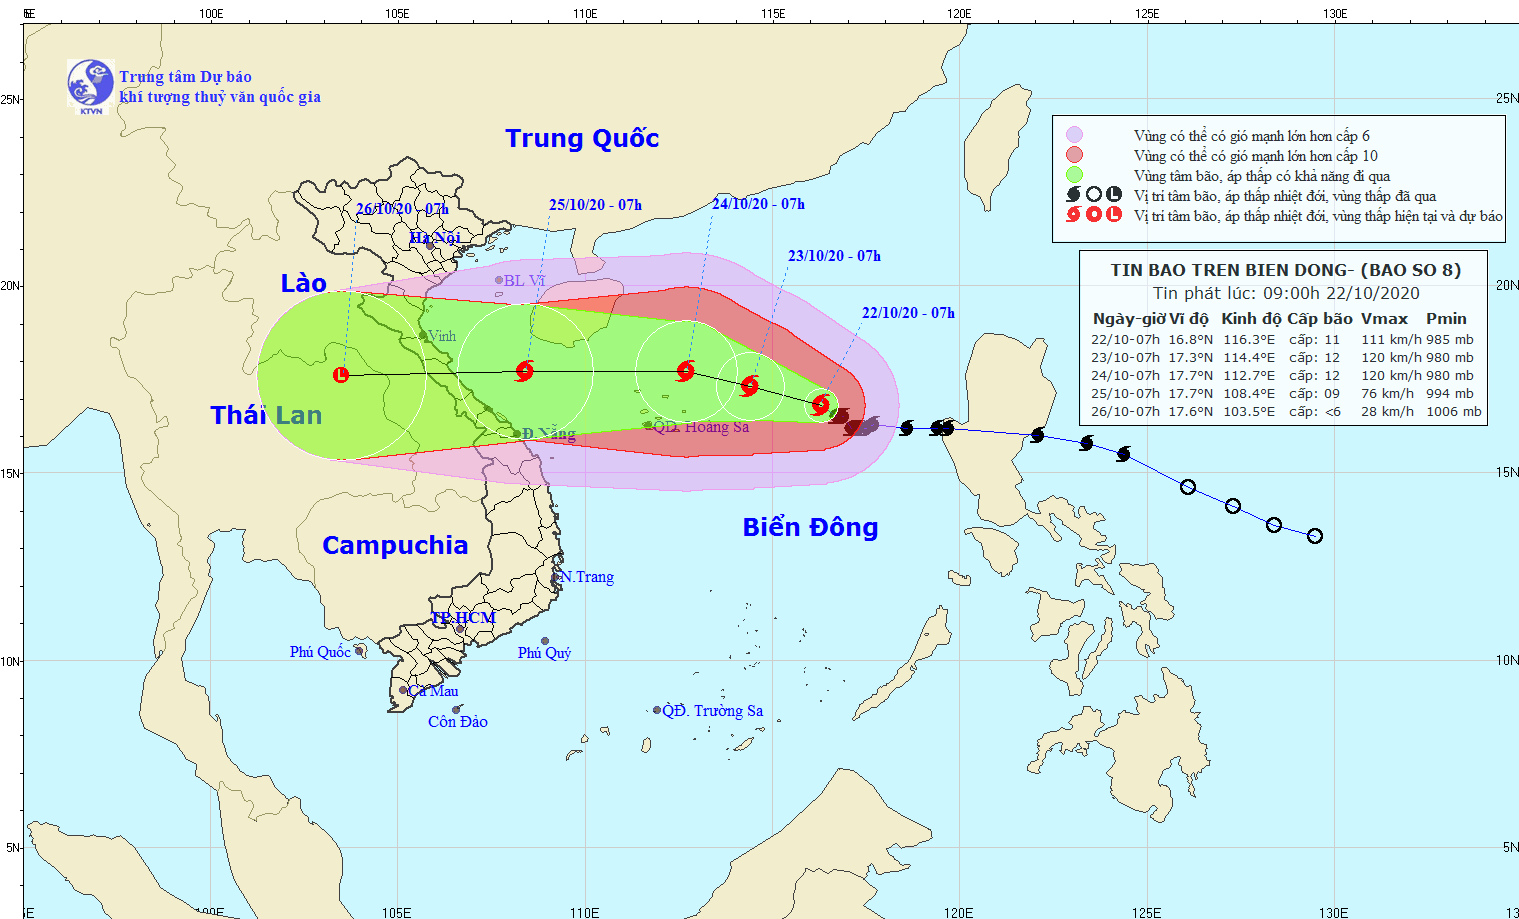 Diễn biến bão lũ miền Trung: Bão số 8 giật cấp 14, hướng vào Bắc Trung Bộ - Ảnh 1.